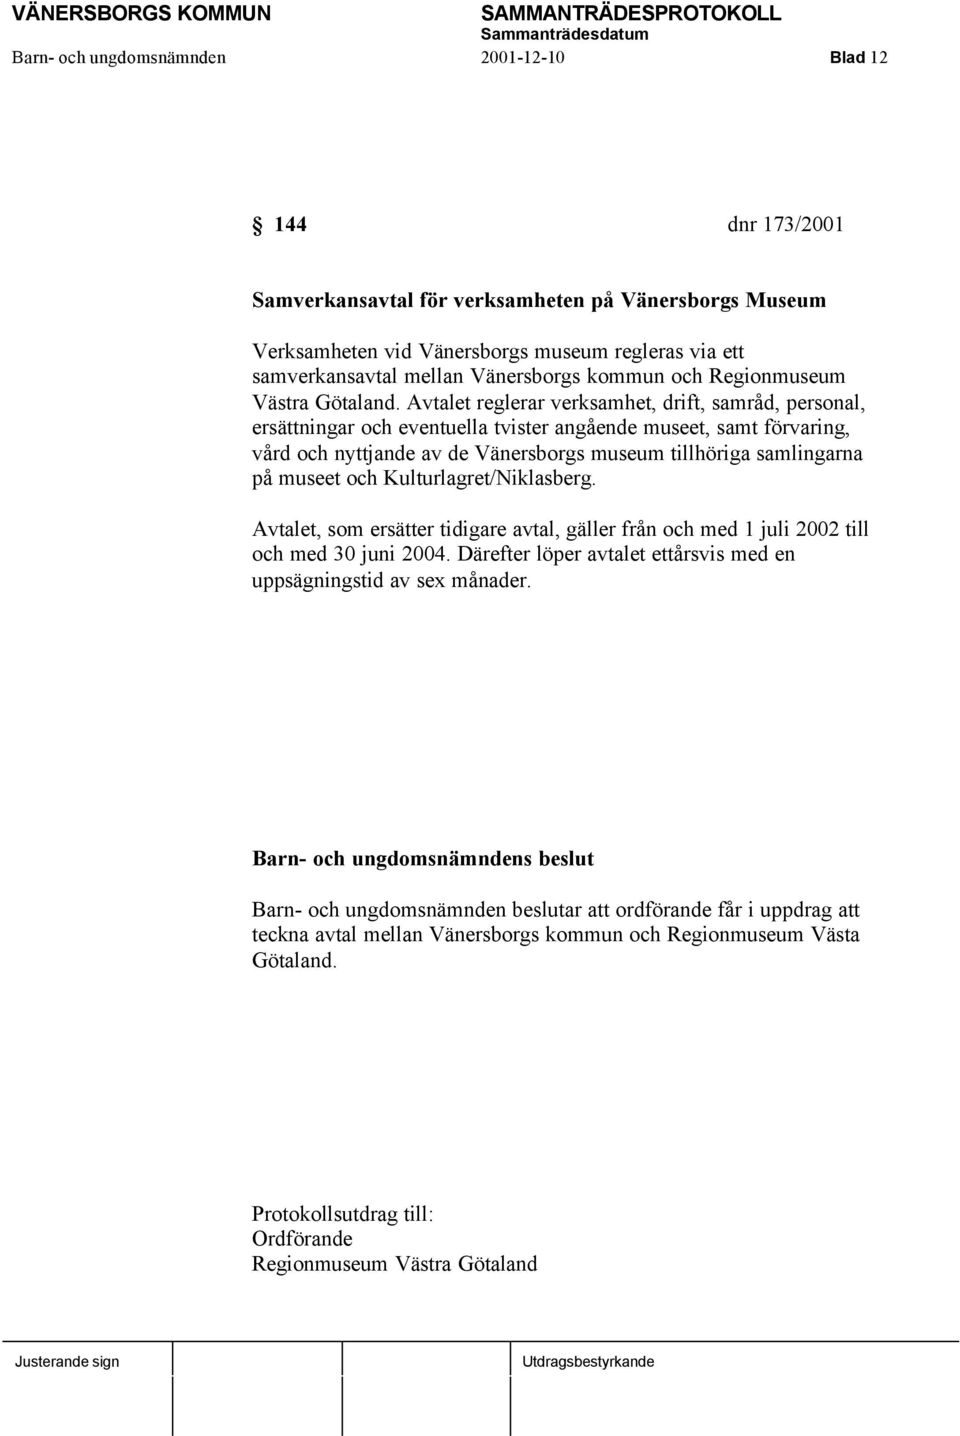 Avtalet reglerar verksamhet, drift, samråd, personal, ersättningar och eventuella tvister angående museet, samt förvaring, vård och nyttjande av de Vänersborgs museum tillhöriga samlingarna på museet